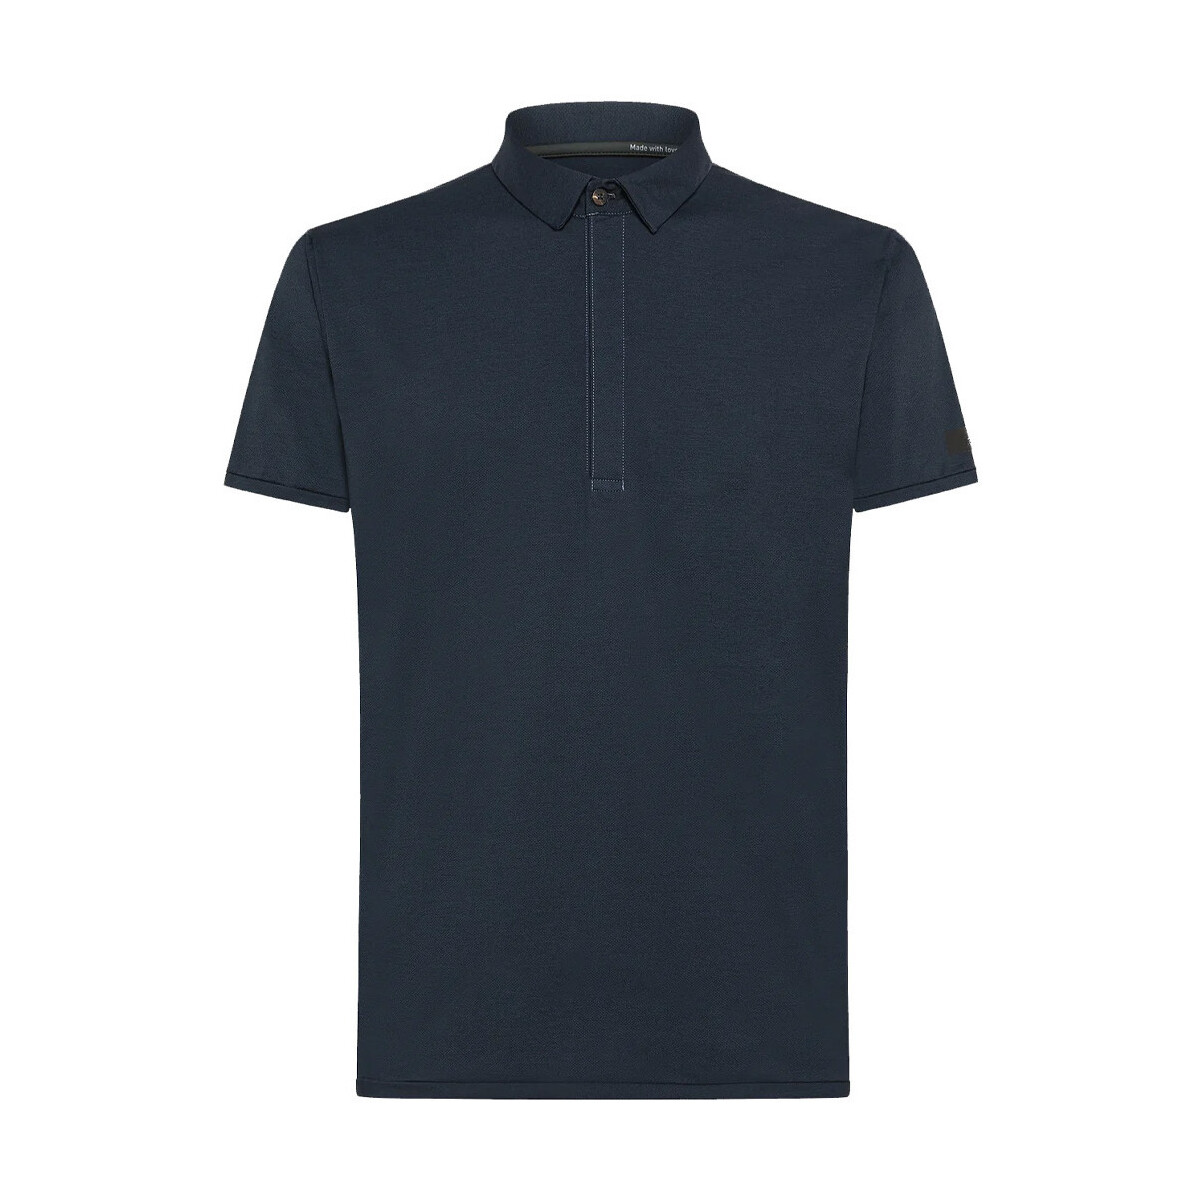 Vêtements Homme T-shirts manches courtes Rrd - Roberto Ricci Designs 24216-60 Multicolore